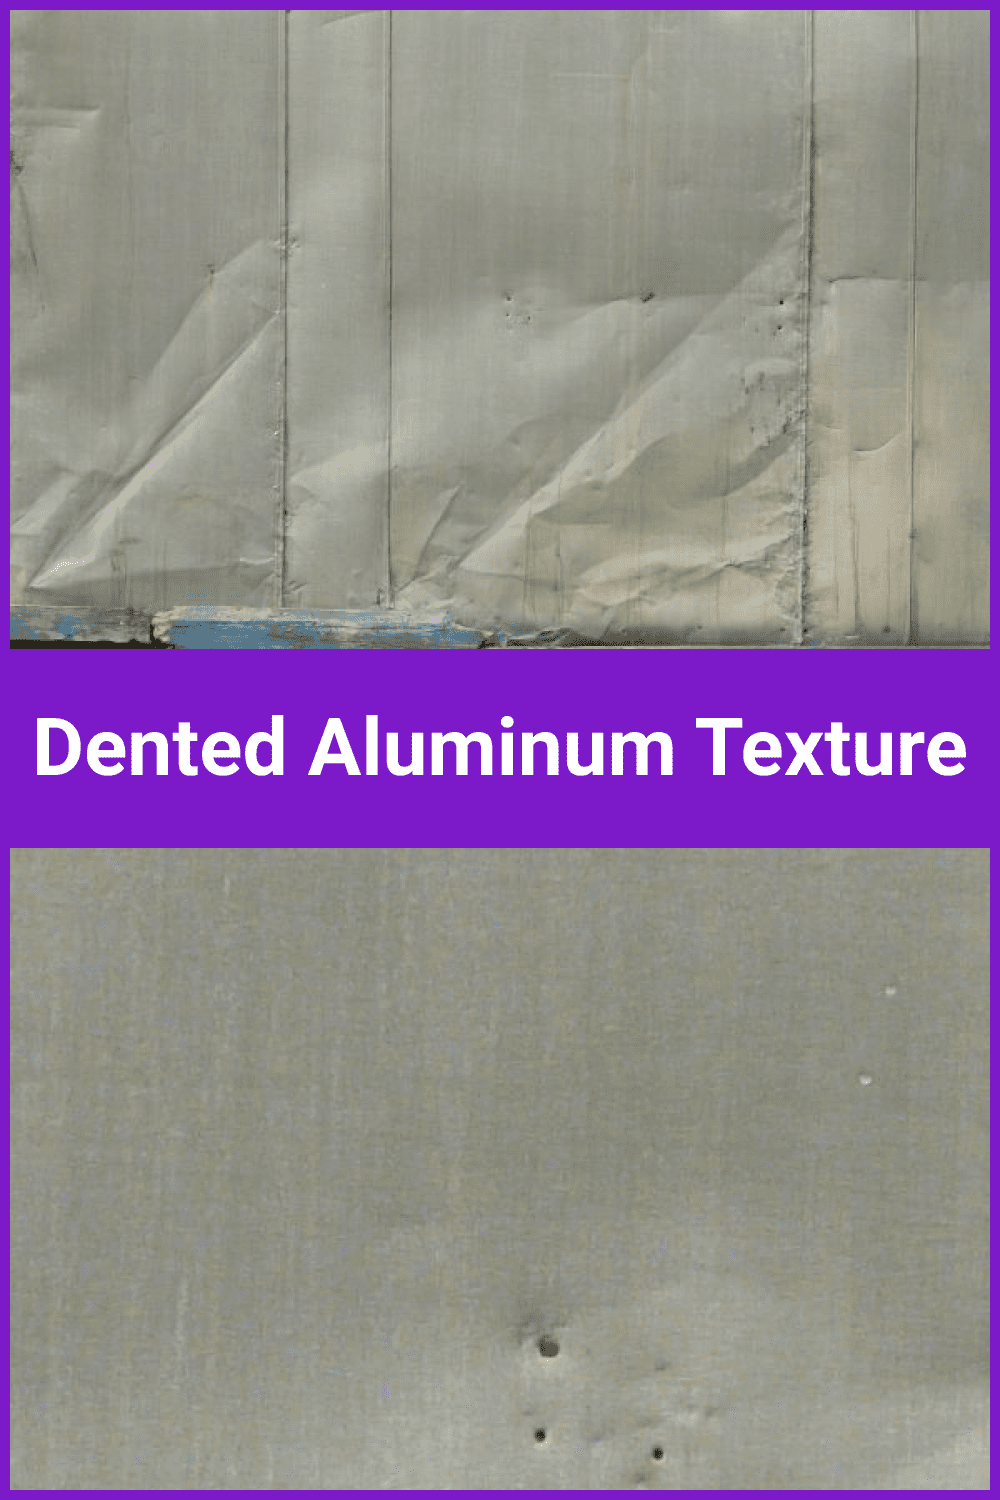 Dented Aluminum Texture.